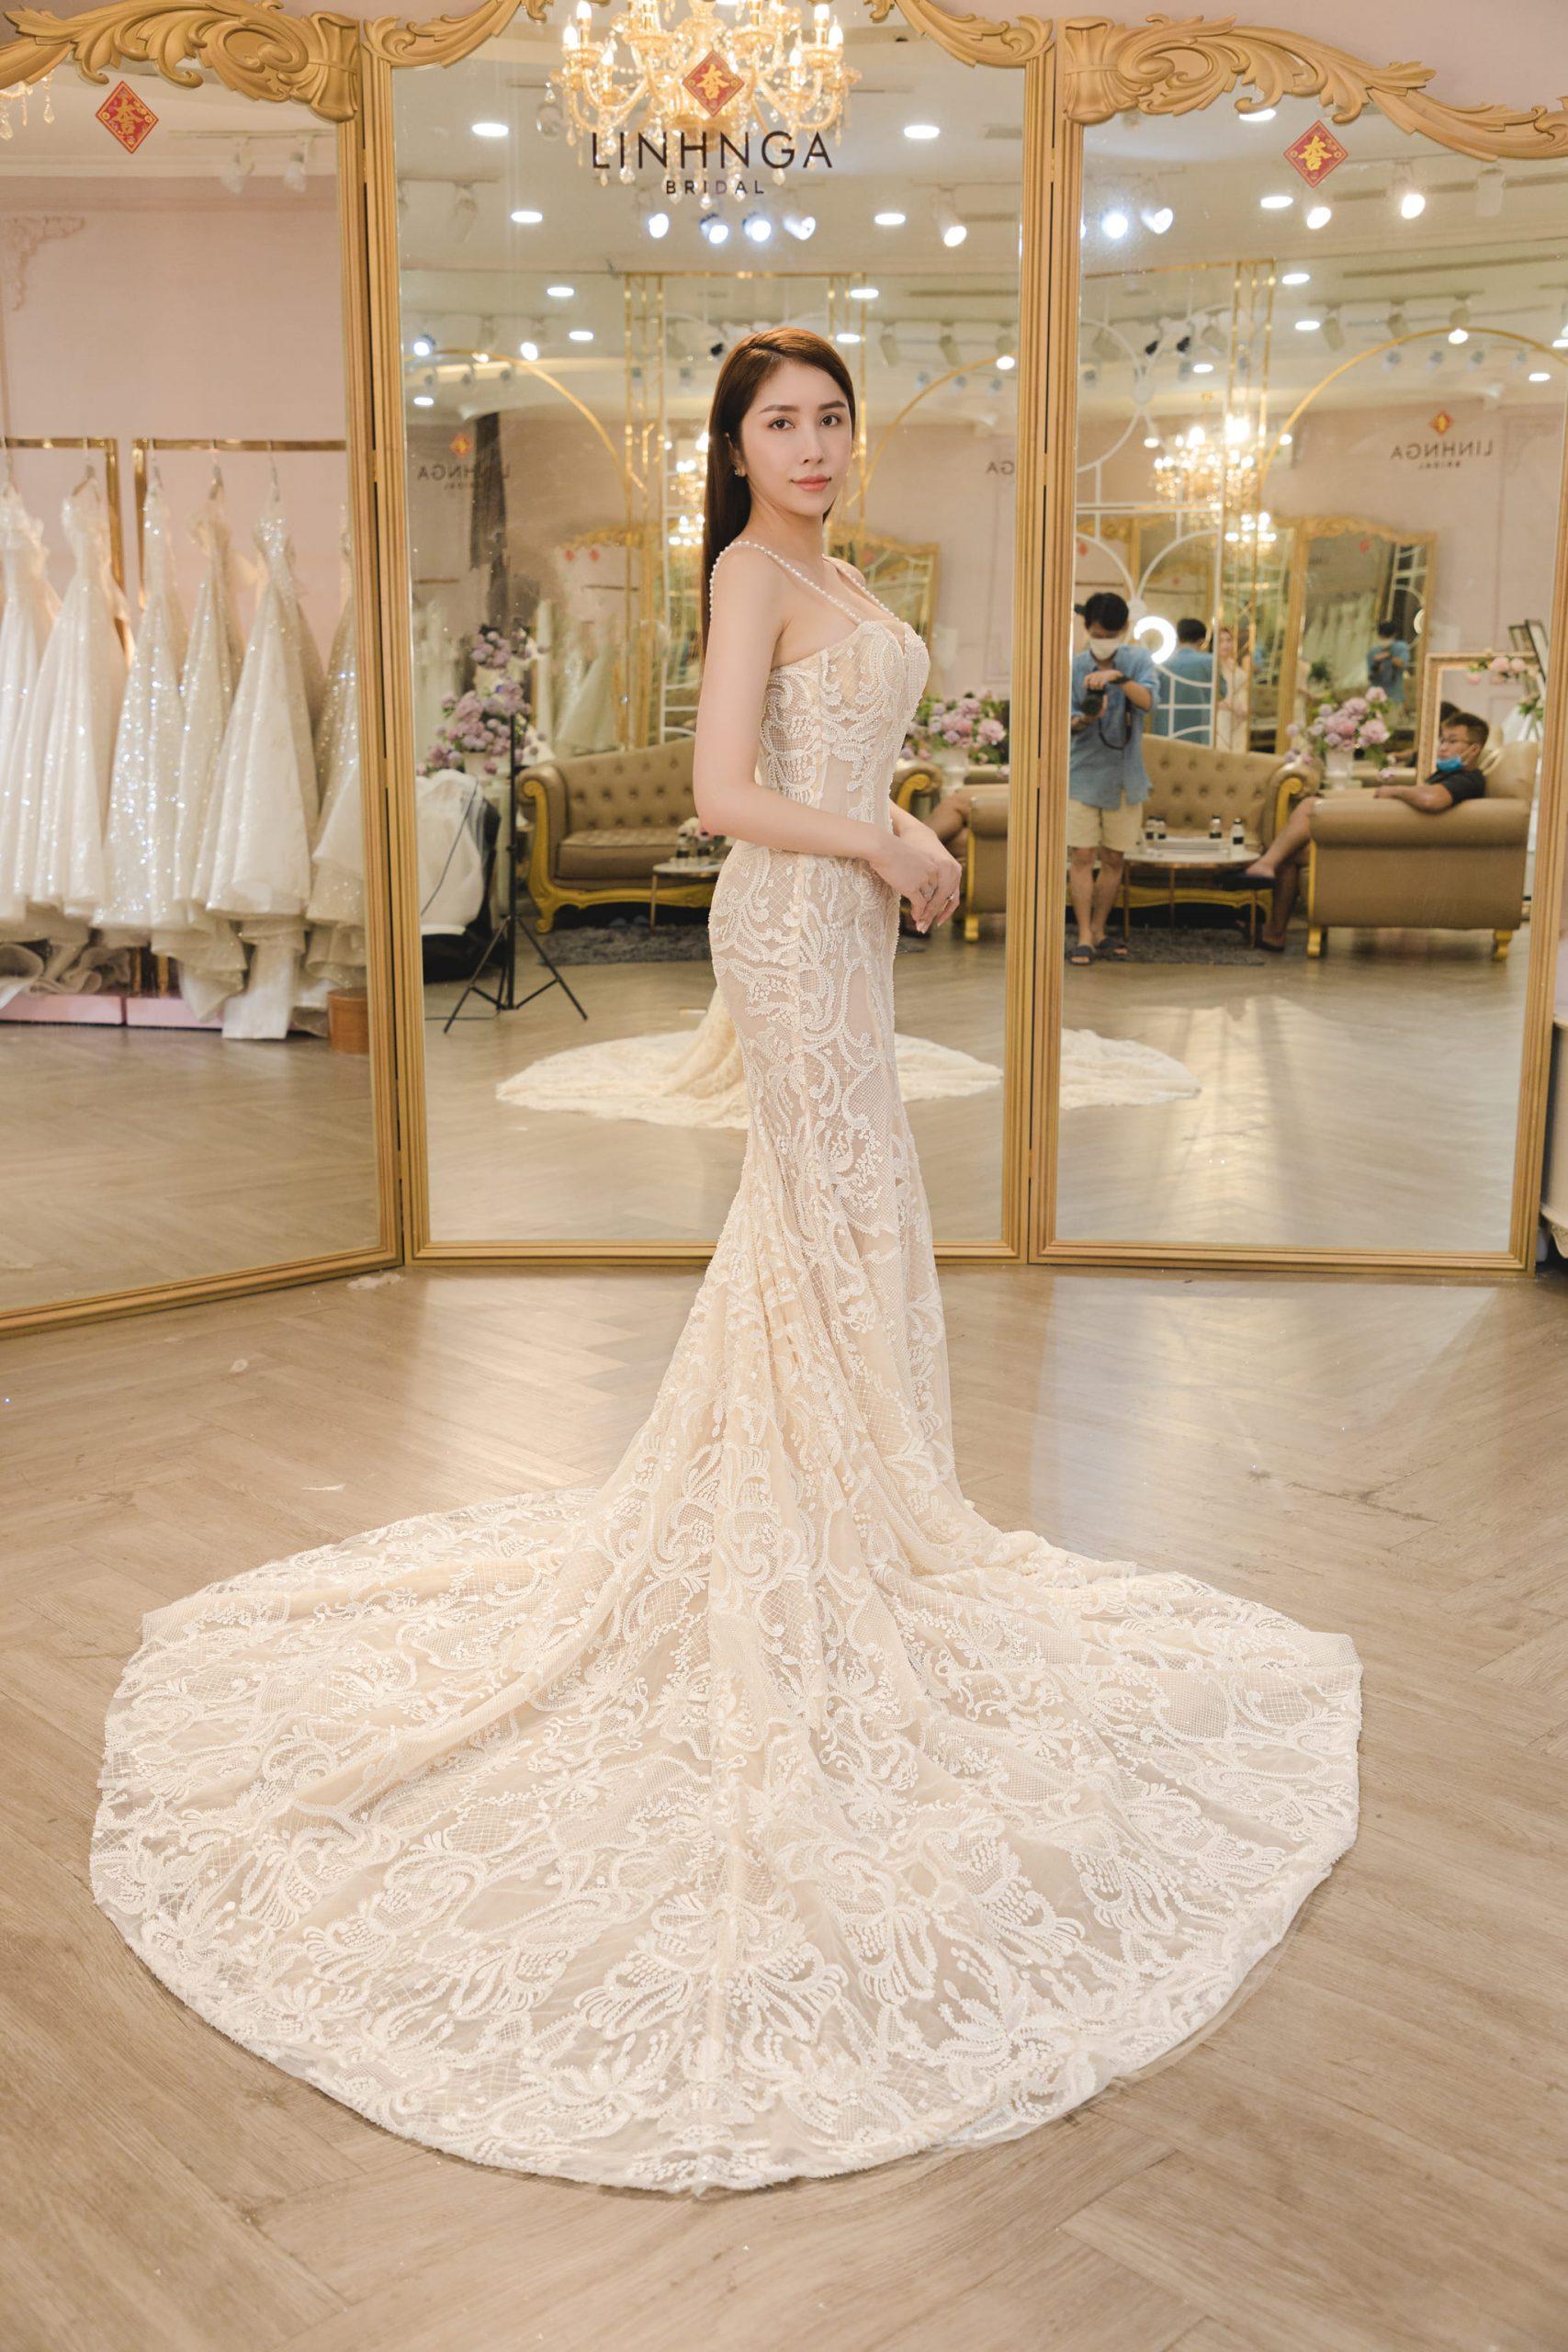 Cô dâu Thu Thảo xinh đẹp khi diện thiết kế của Linh Nga Bridal